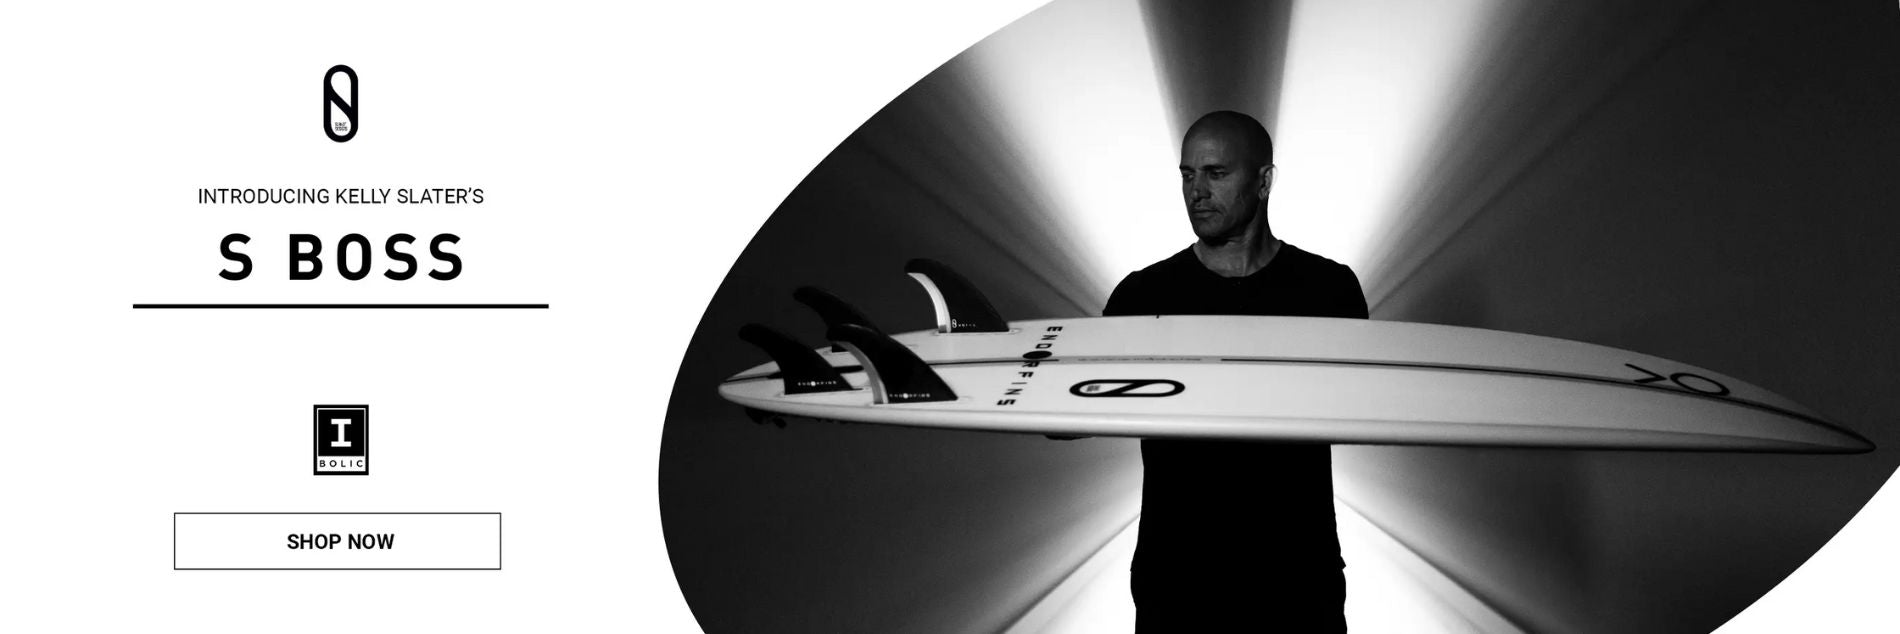 firewire kelly slater designs surfboard boss shop online grua matosinhos portugal